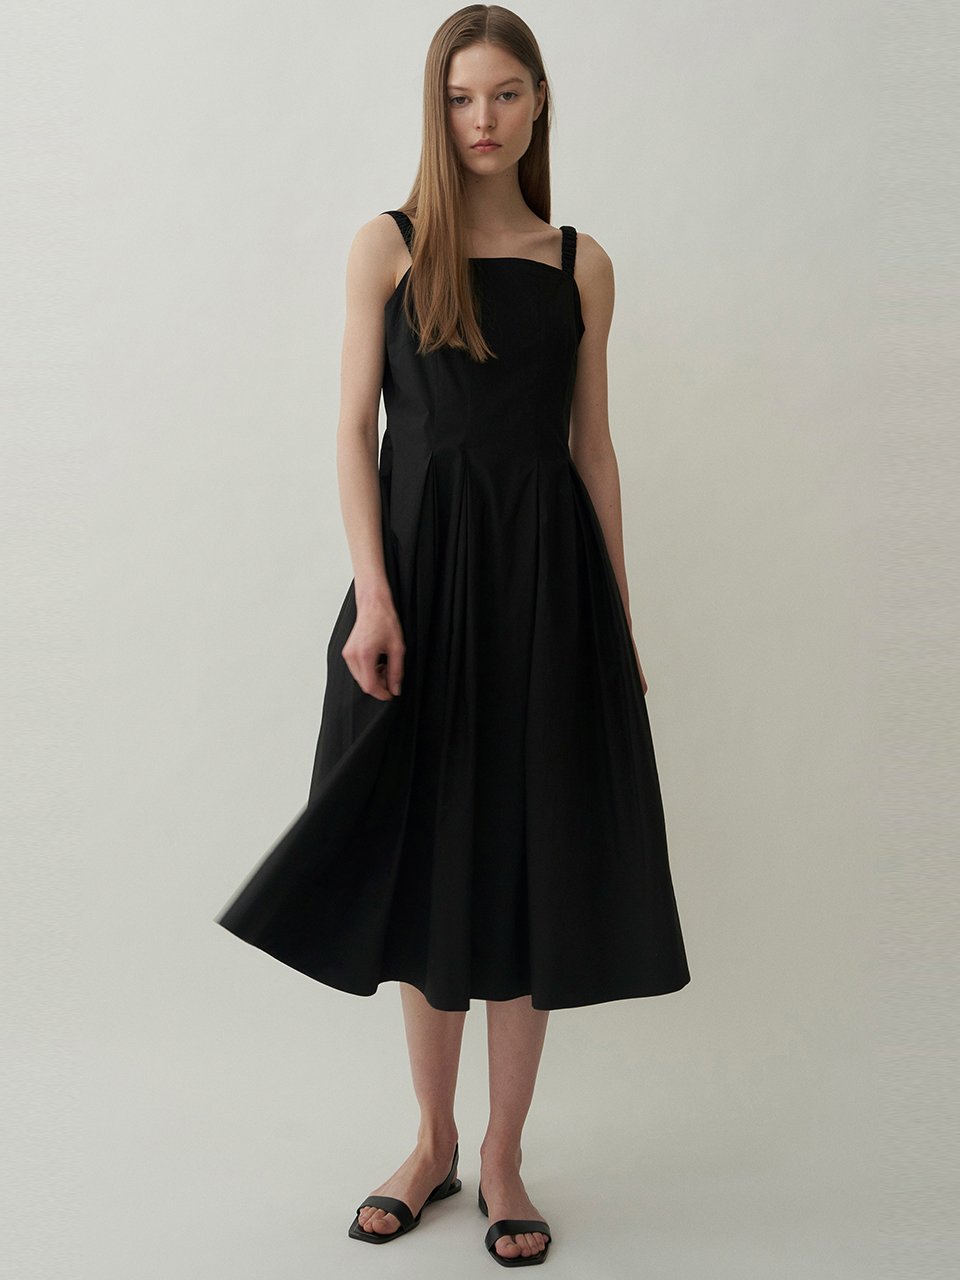 [블랭크03] cotton strap dress (black)